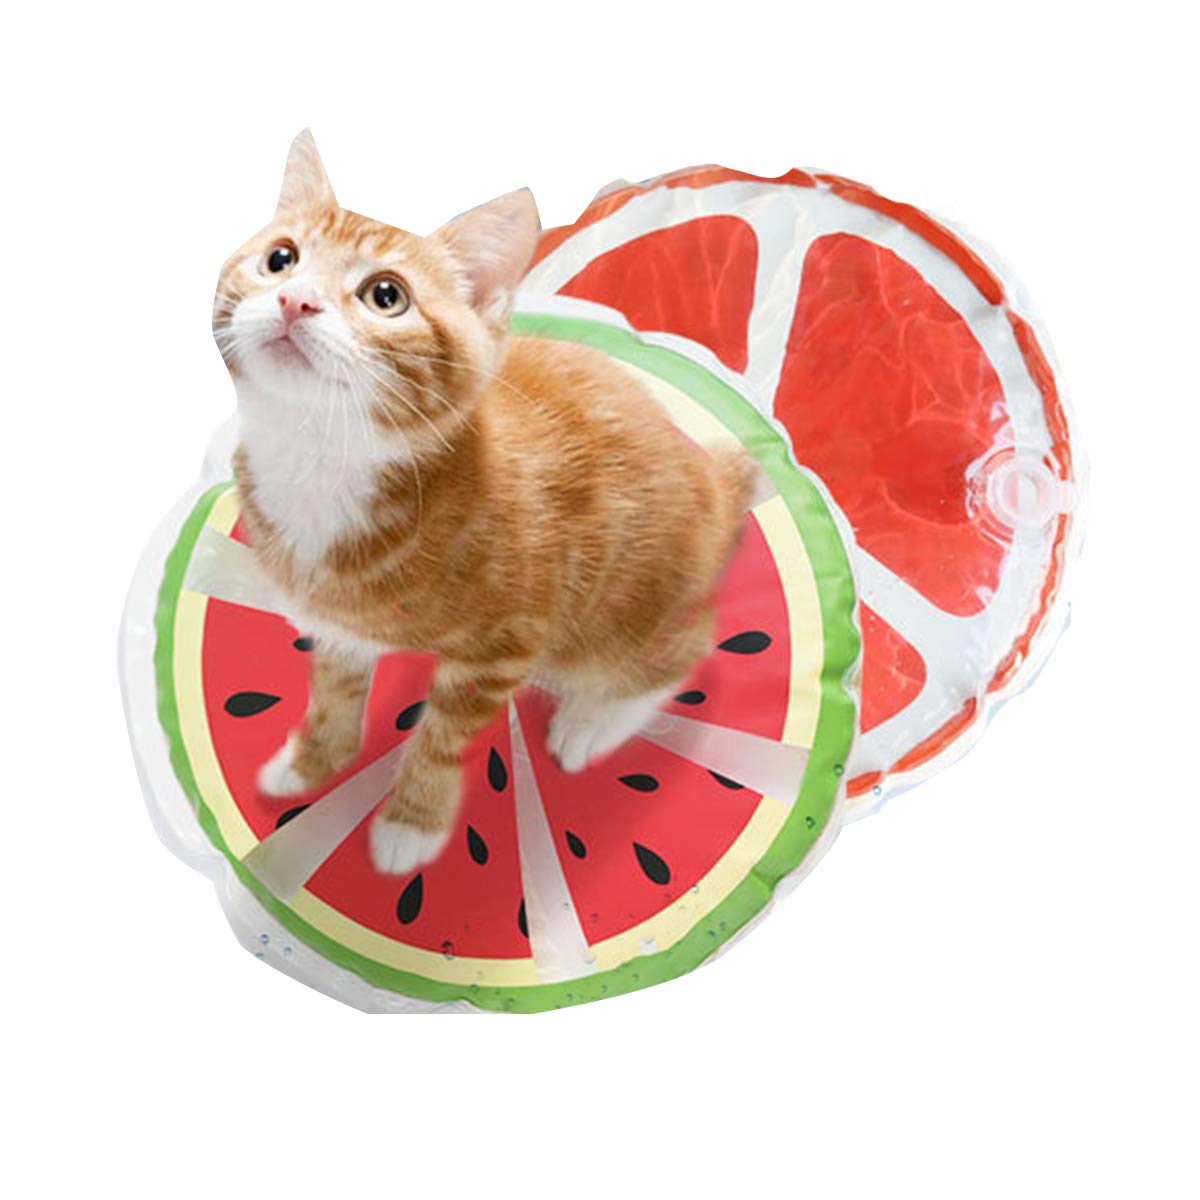 2 Stück Haustier-Kühlmatte Sommer Wasserkühlkissen Obst Gedruckt Wasser Pad Hund Katze Sommer Bett Matten für Haustier Kühlung Sitzkissen Wassermelone + Granatapfel